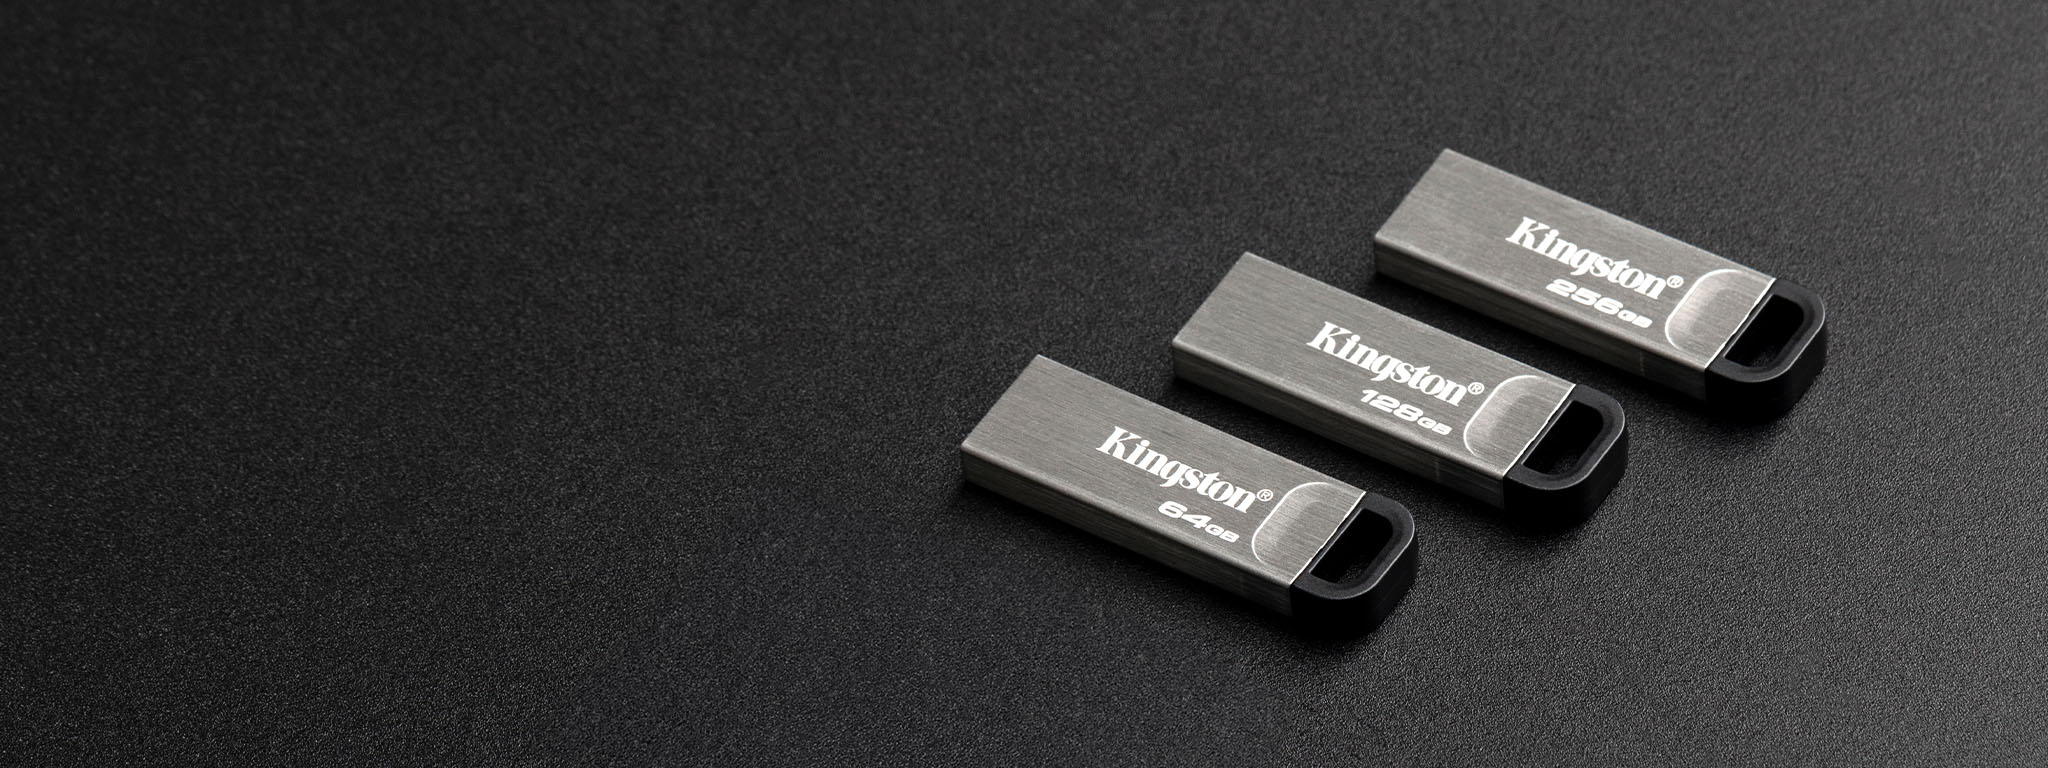 Vista aérea de cuatro capacidades distintas de unidad flash USB DT Kyson sobre una superficie de color negro